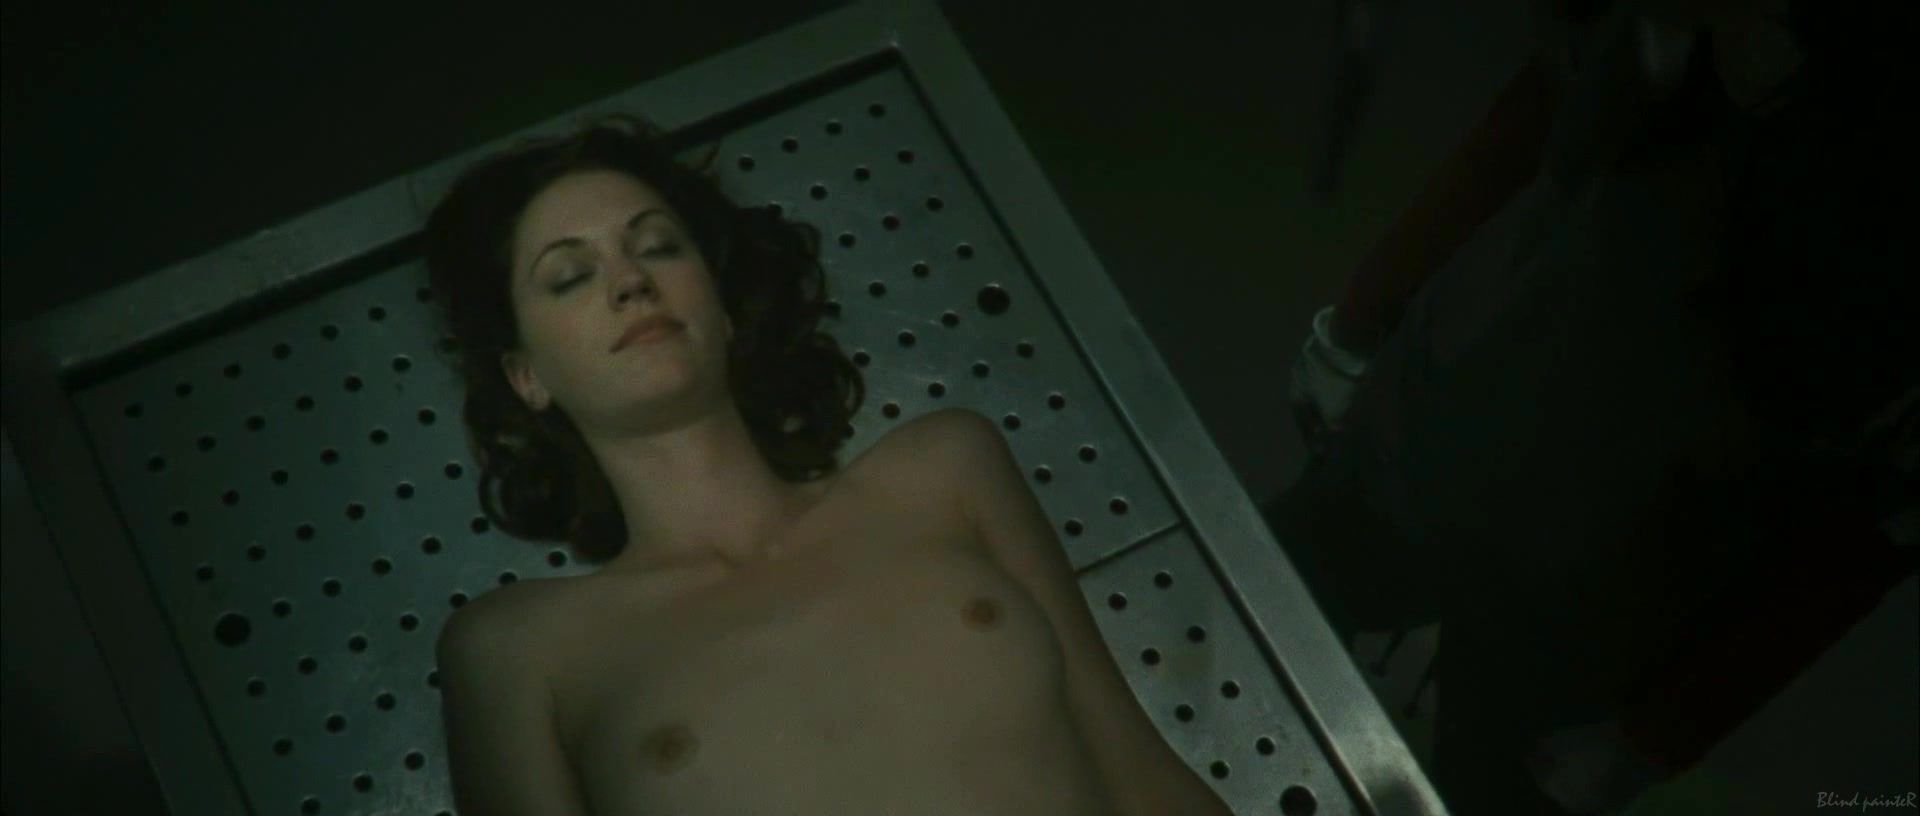 Cum Swallow Sex video Lauren Lee Smith nude - Pathology (2008) NXTComics - 1